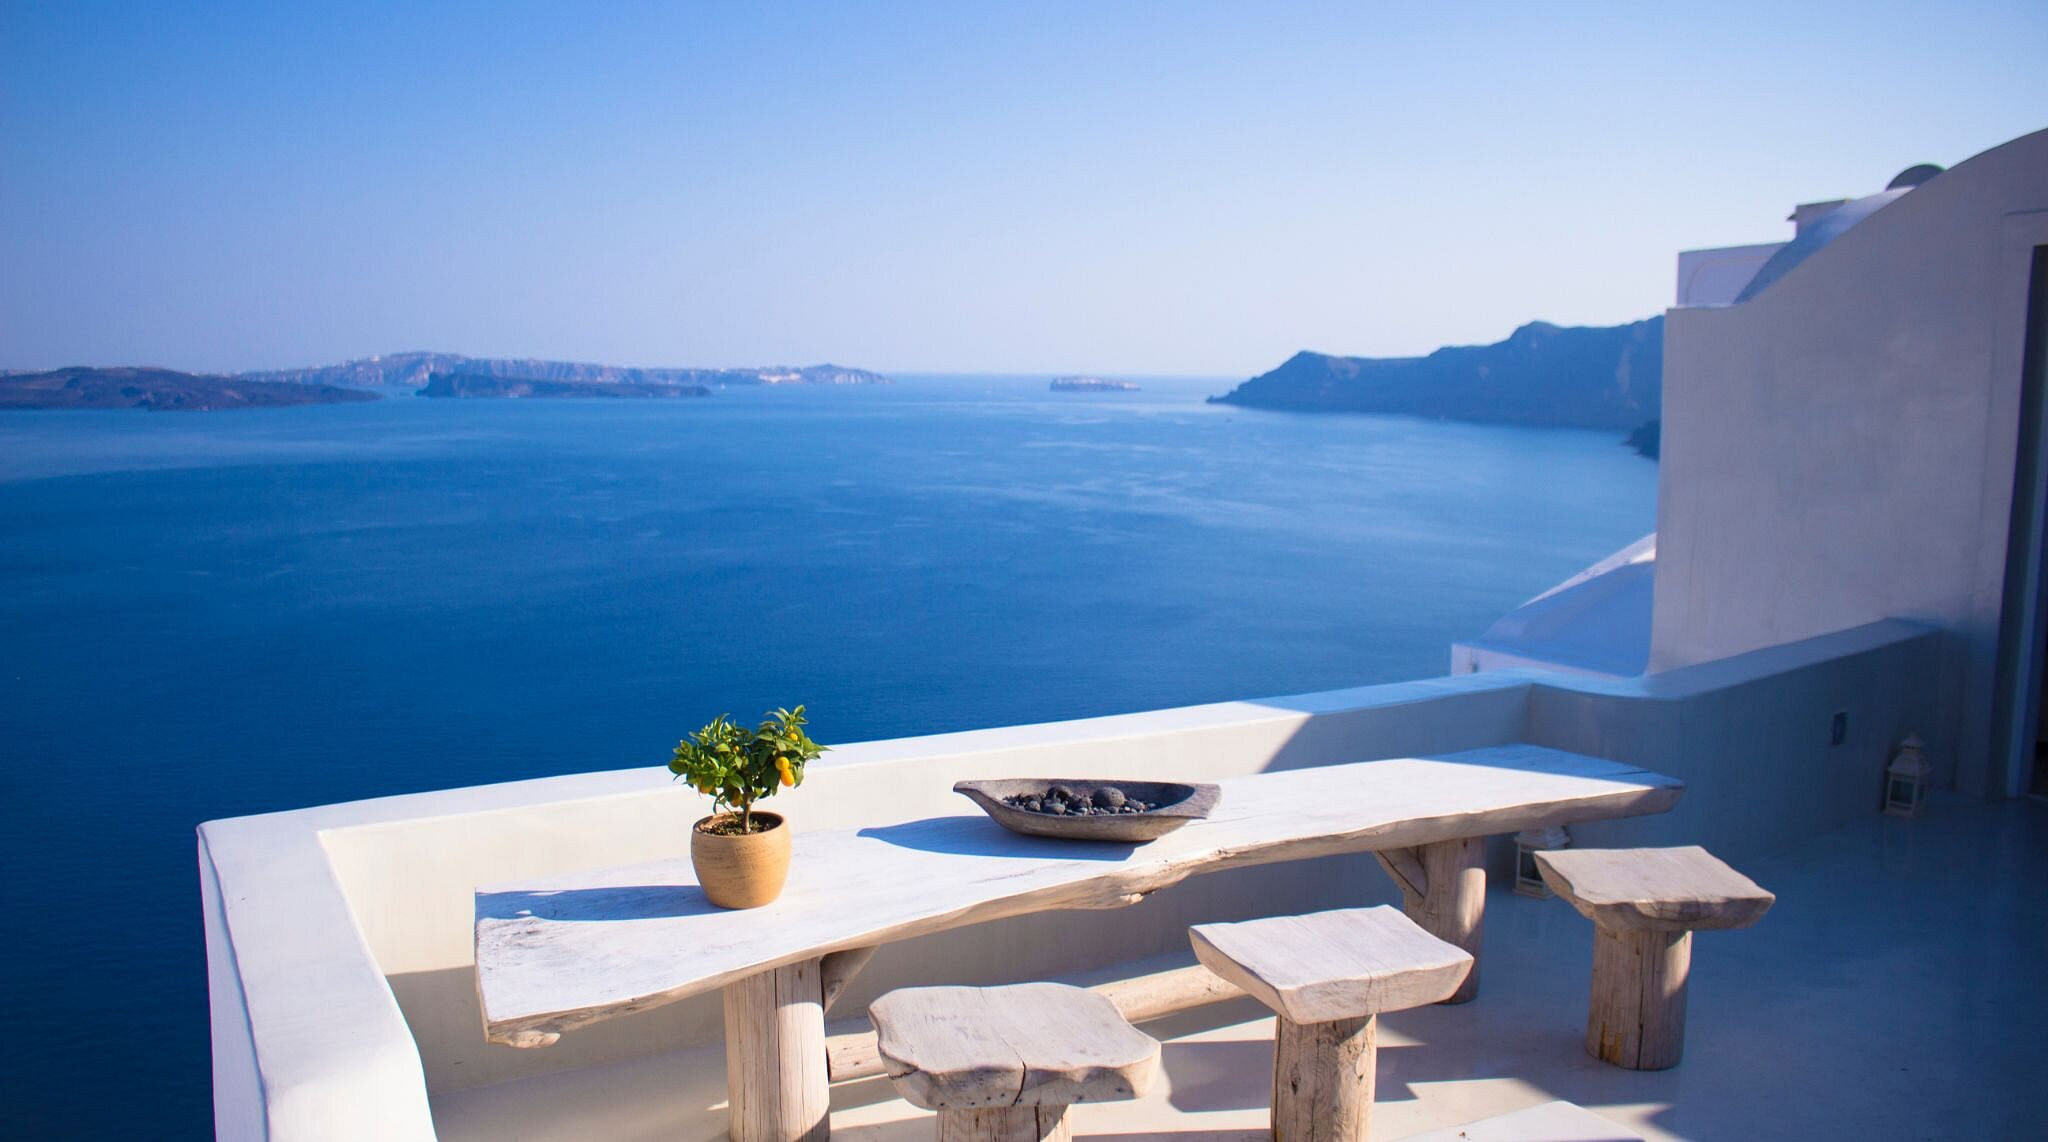 그리스 섬 호텔의 바다 전망